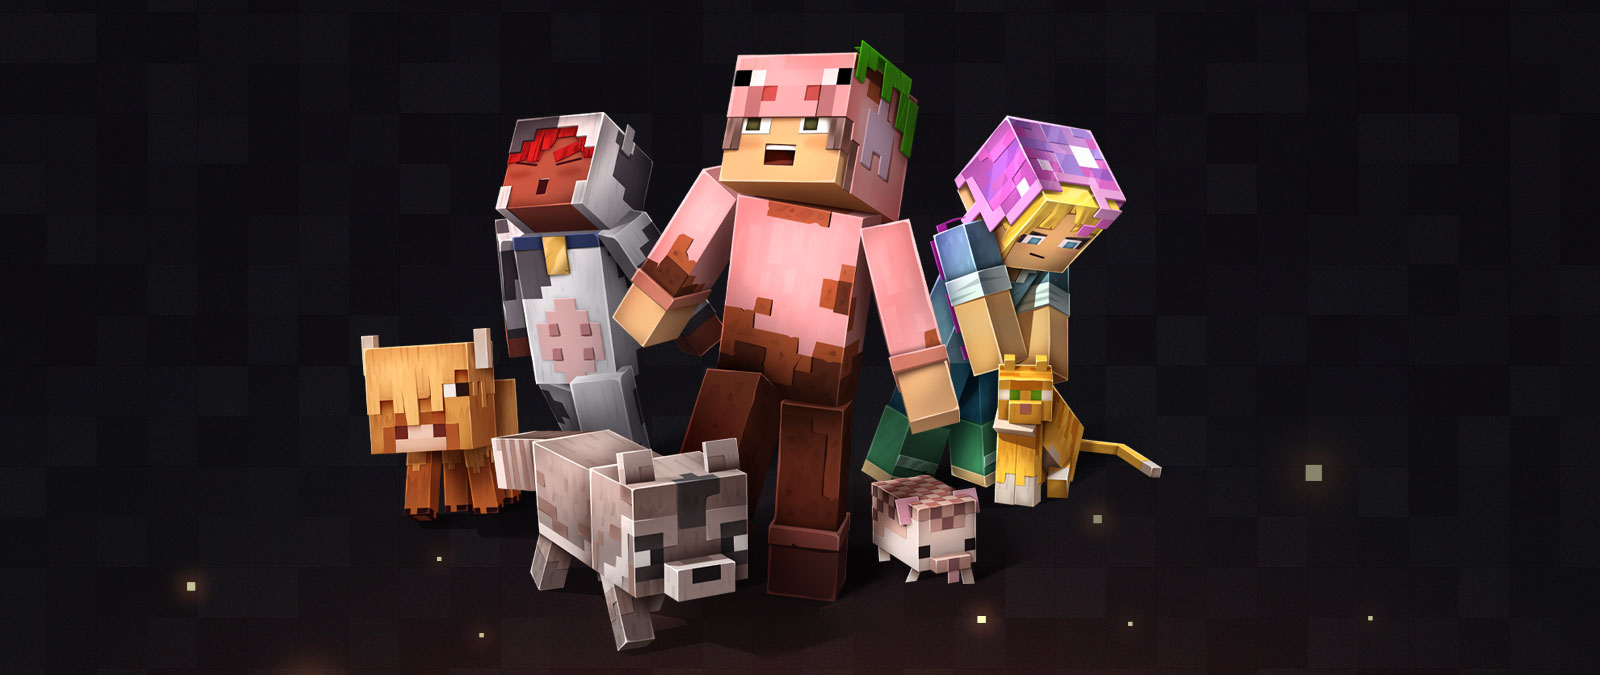 Différents skins de personnages et d’animaux de Minecraft alors qu’un personnage se penche pour caresser un chat.